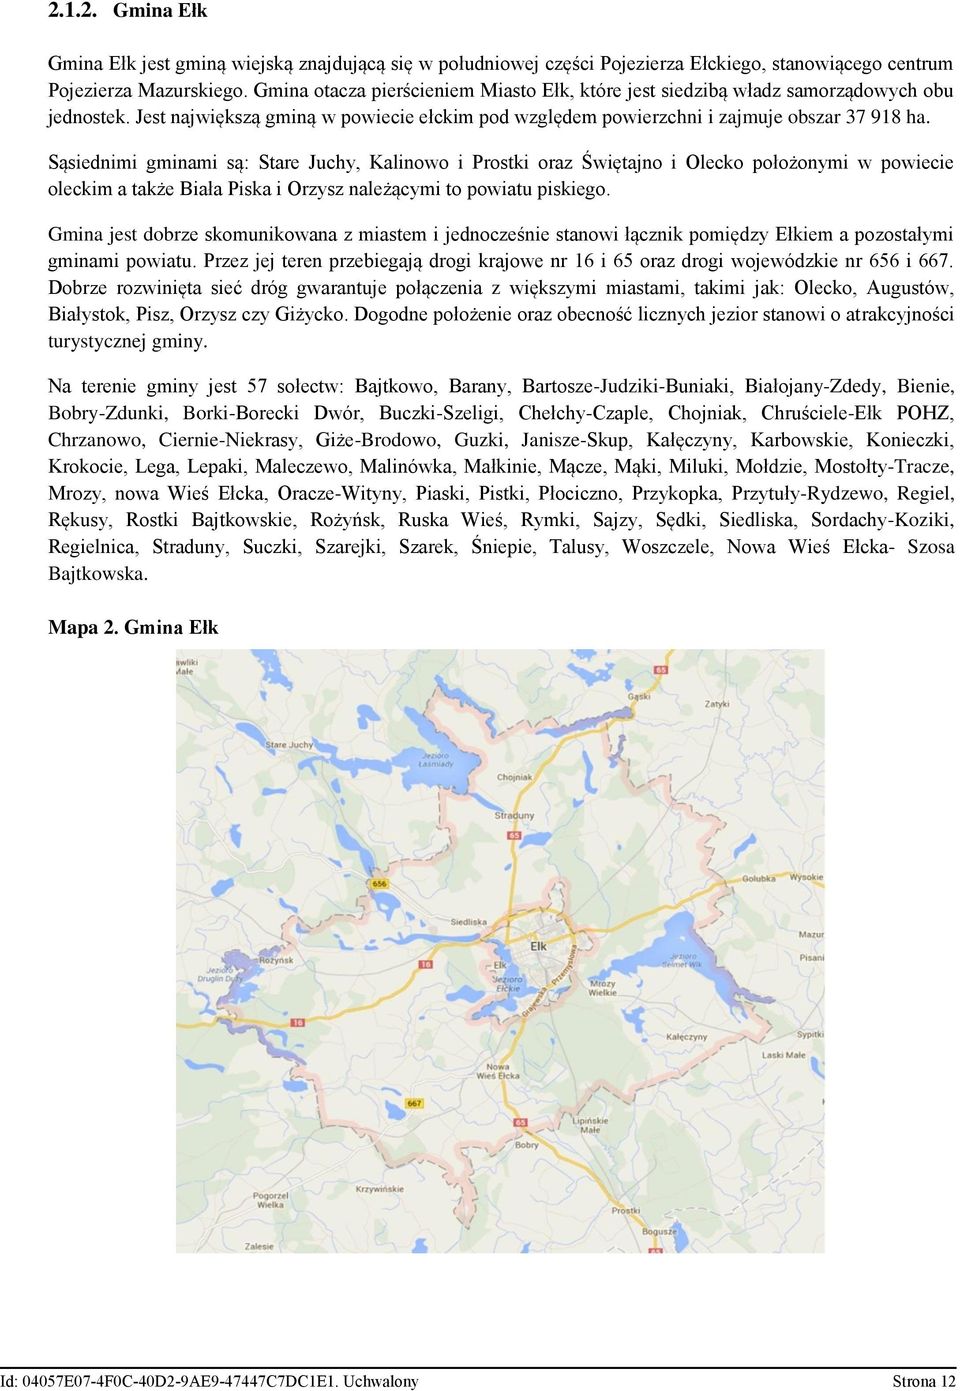 Sąsiednimi gminami są: Stare Juchy, Kalinowo i Prostki oraz Świętajno i Olecko położonymi w powiecie oleckim a także Biała Piska i Orzysz należącymi to powiatu piskiego.